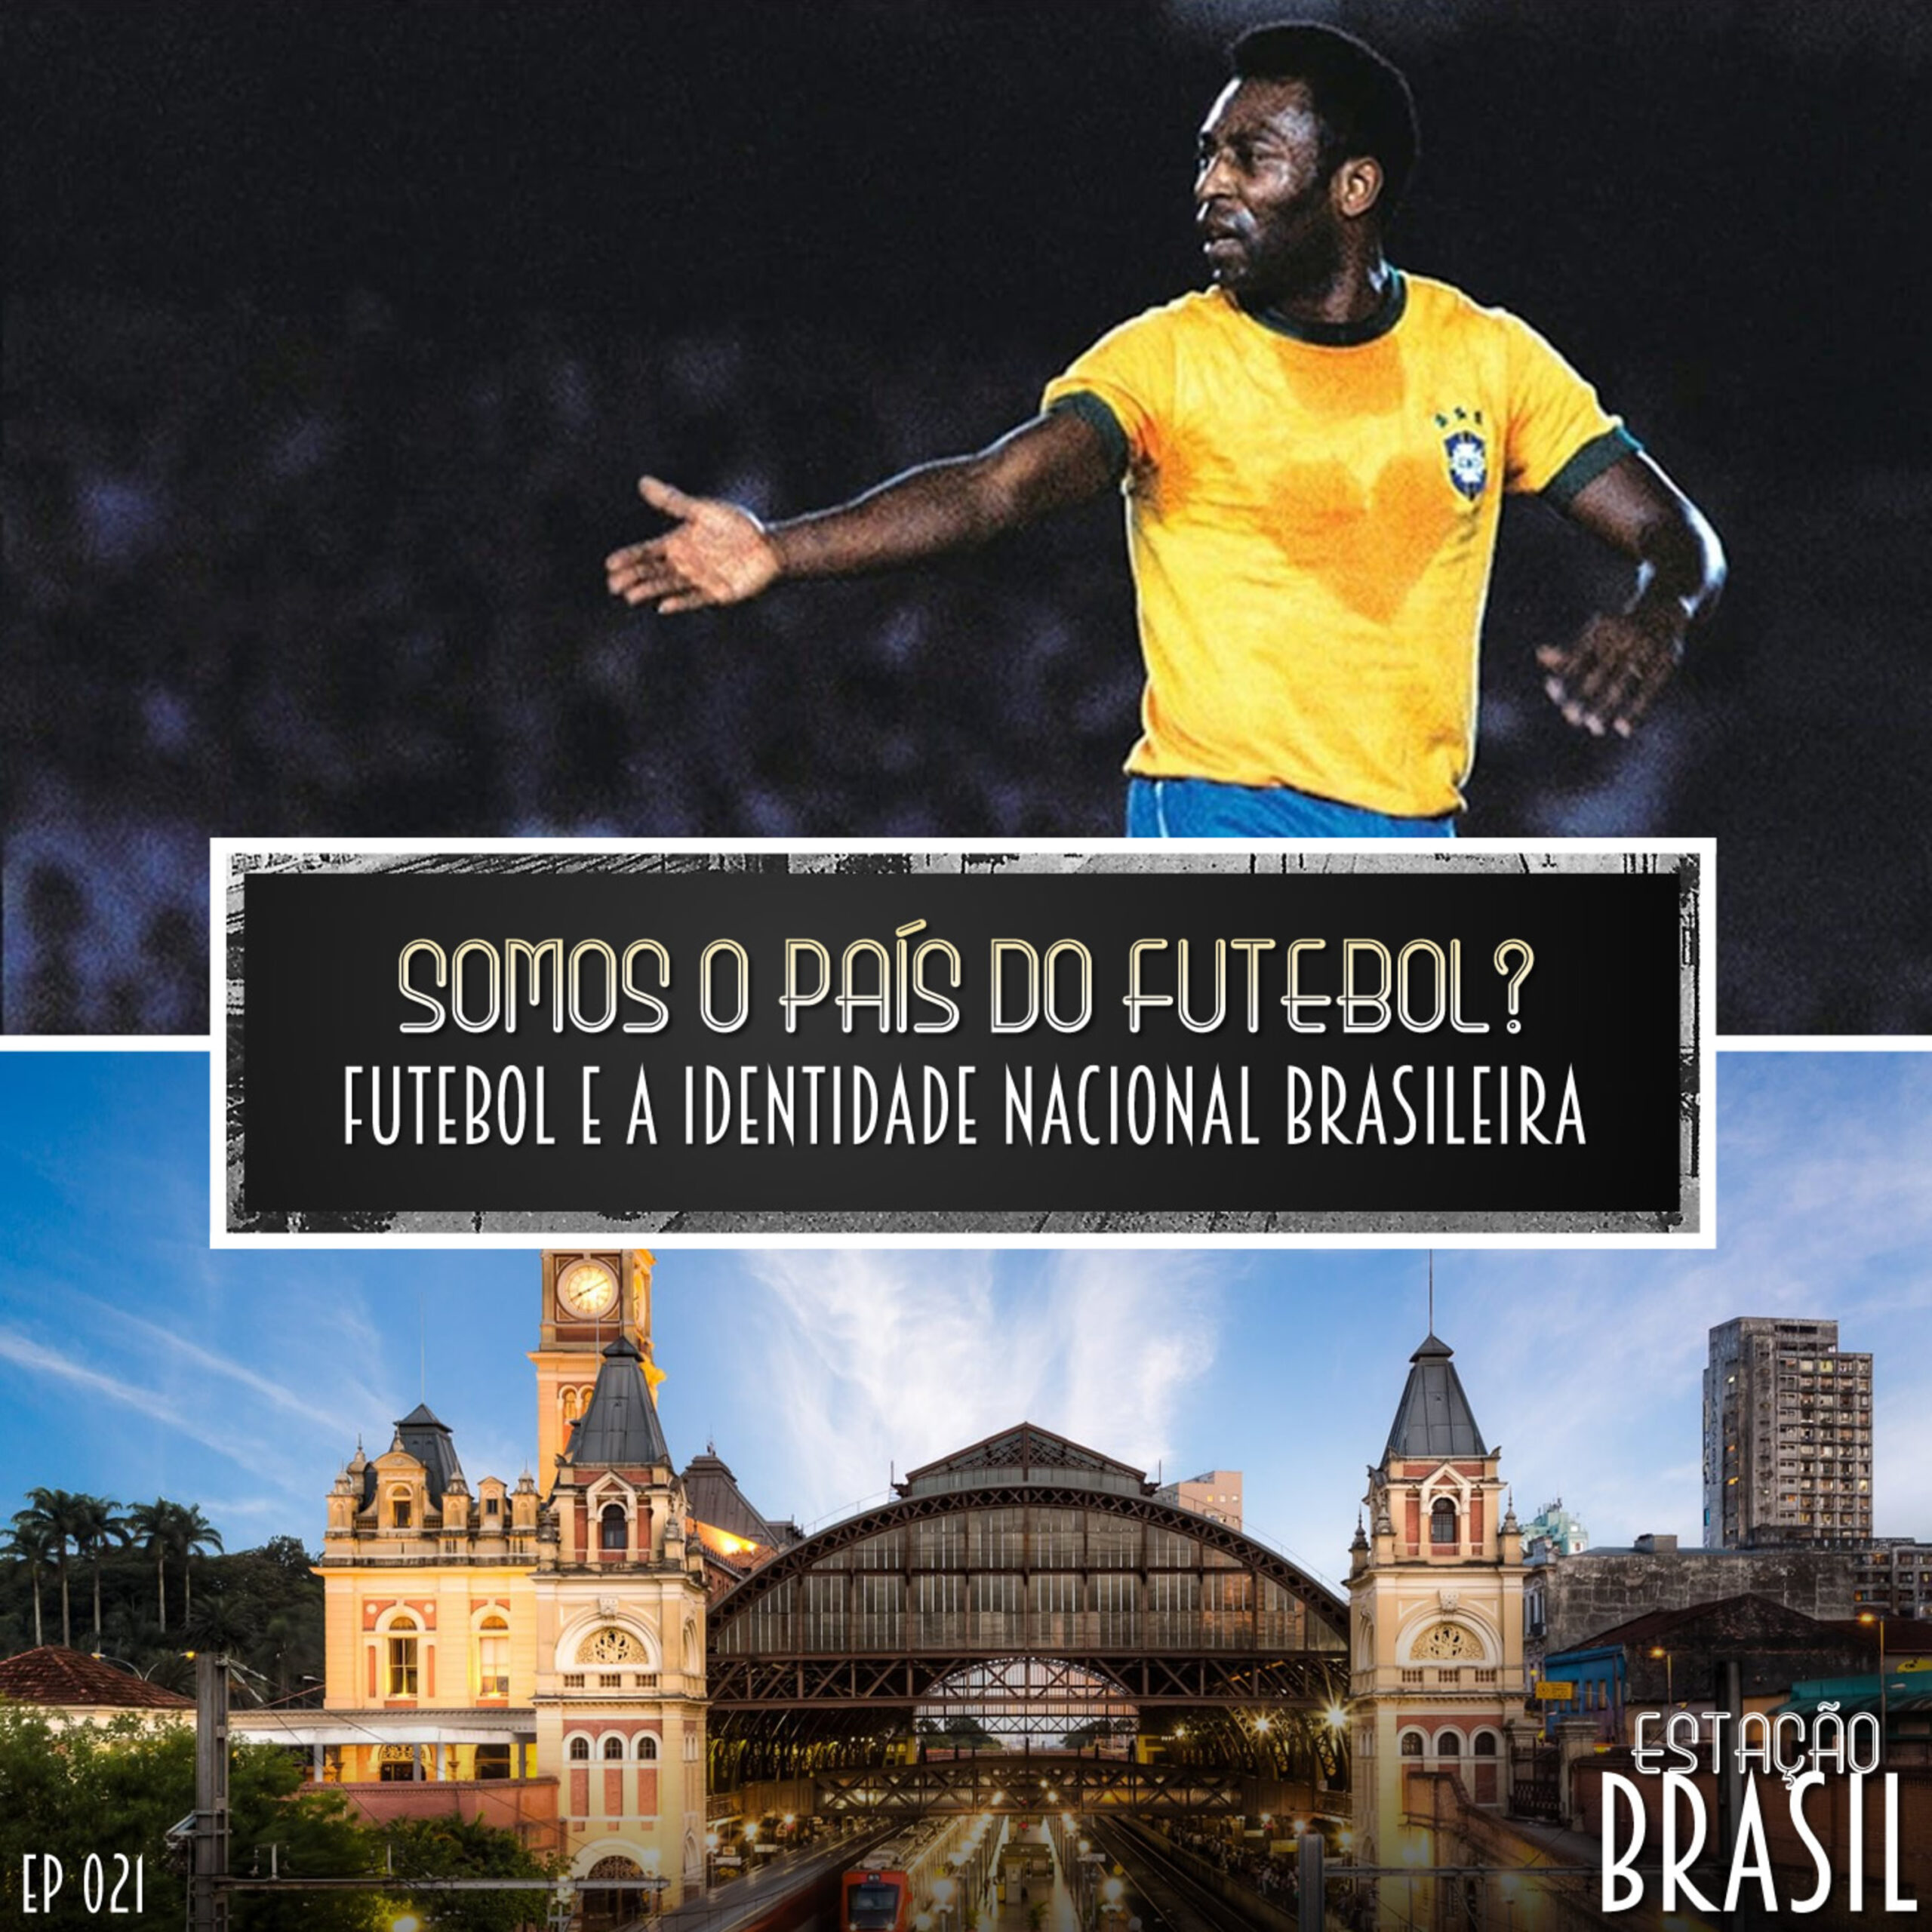 Somos o país do futebol?: futebol e a identidade nacional brasileira